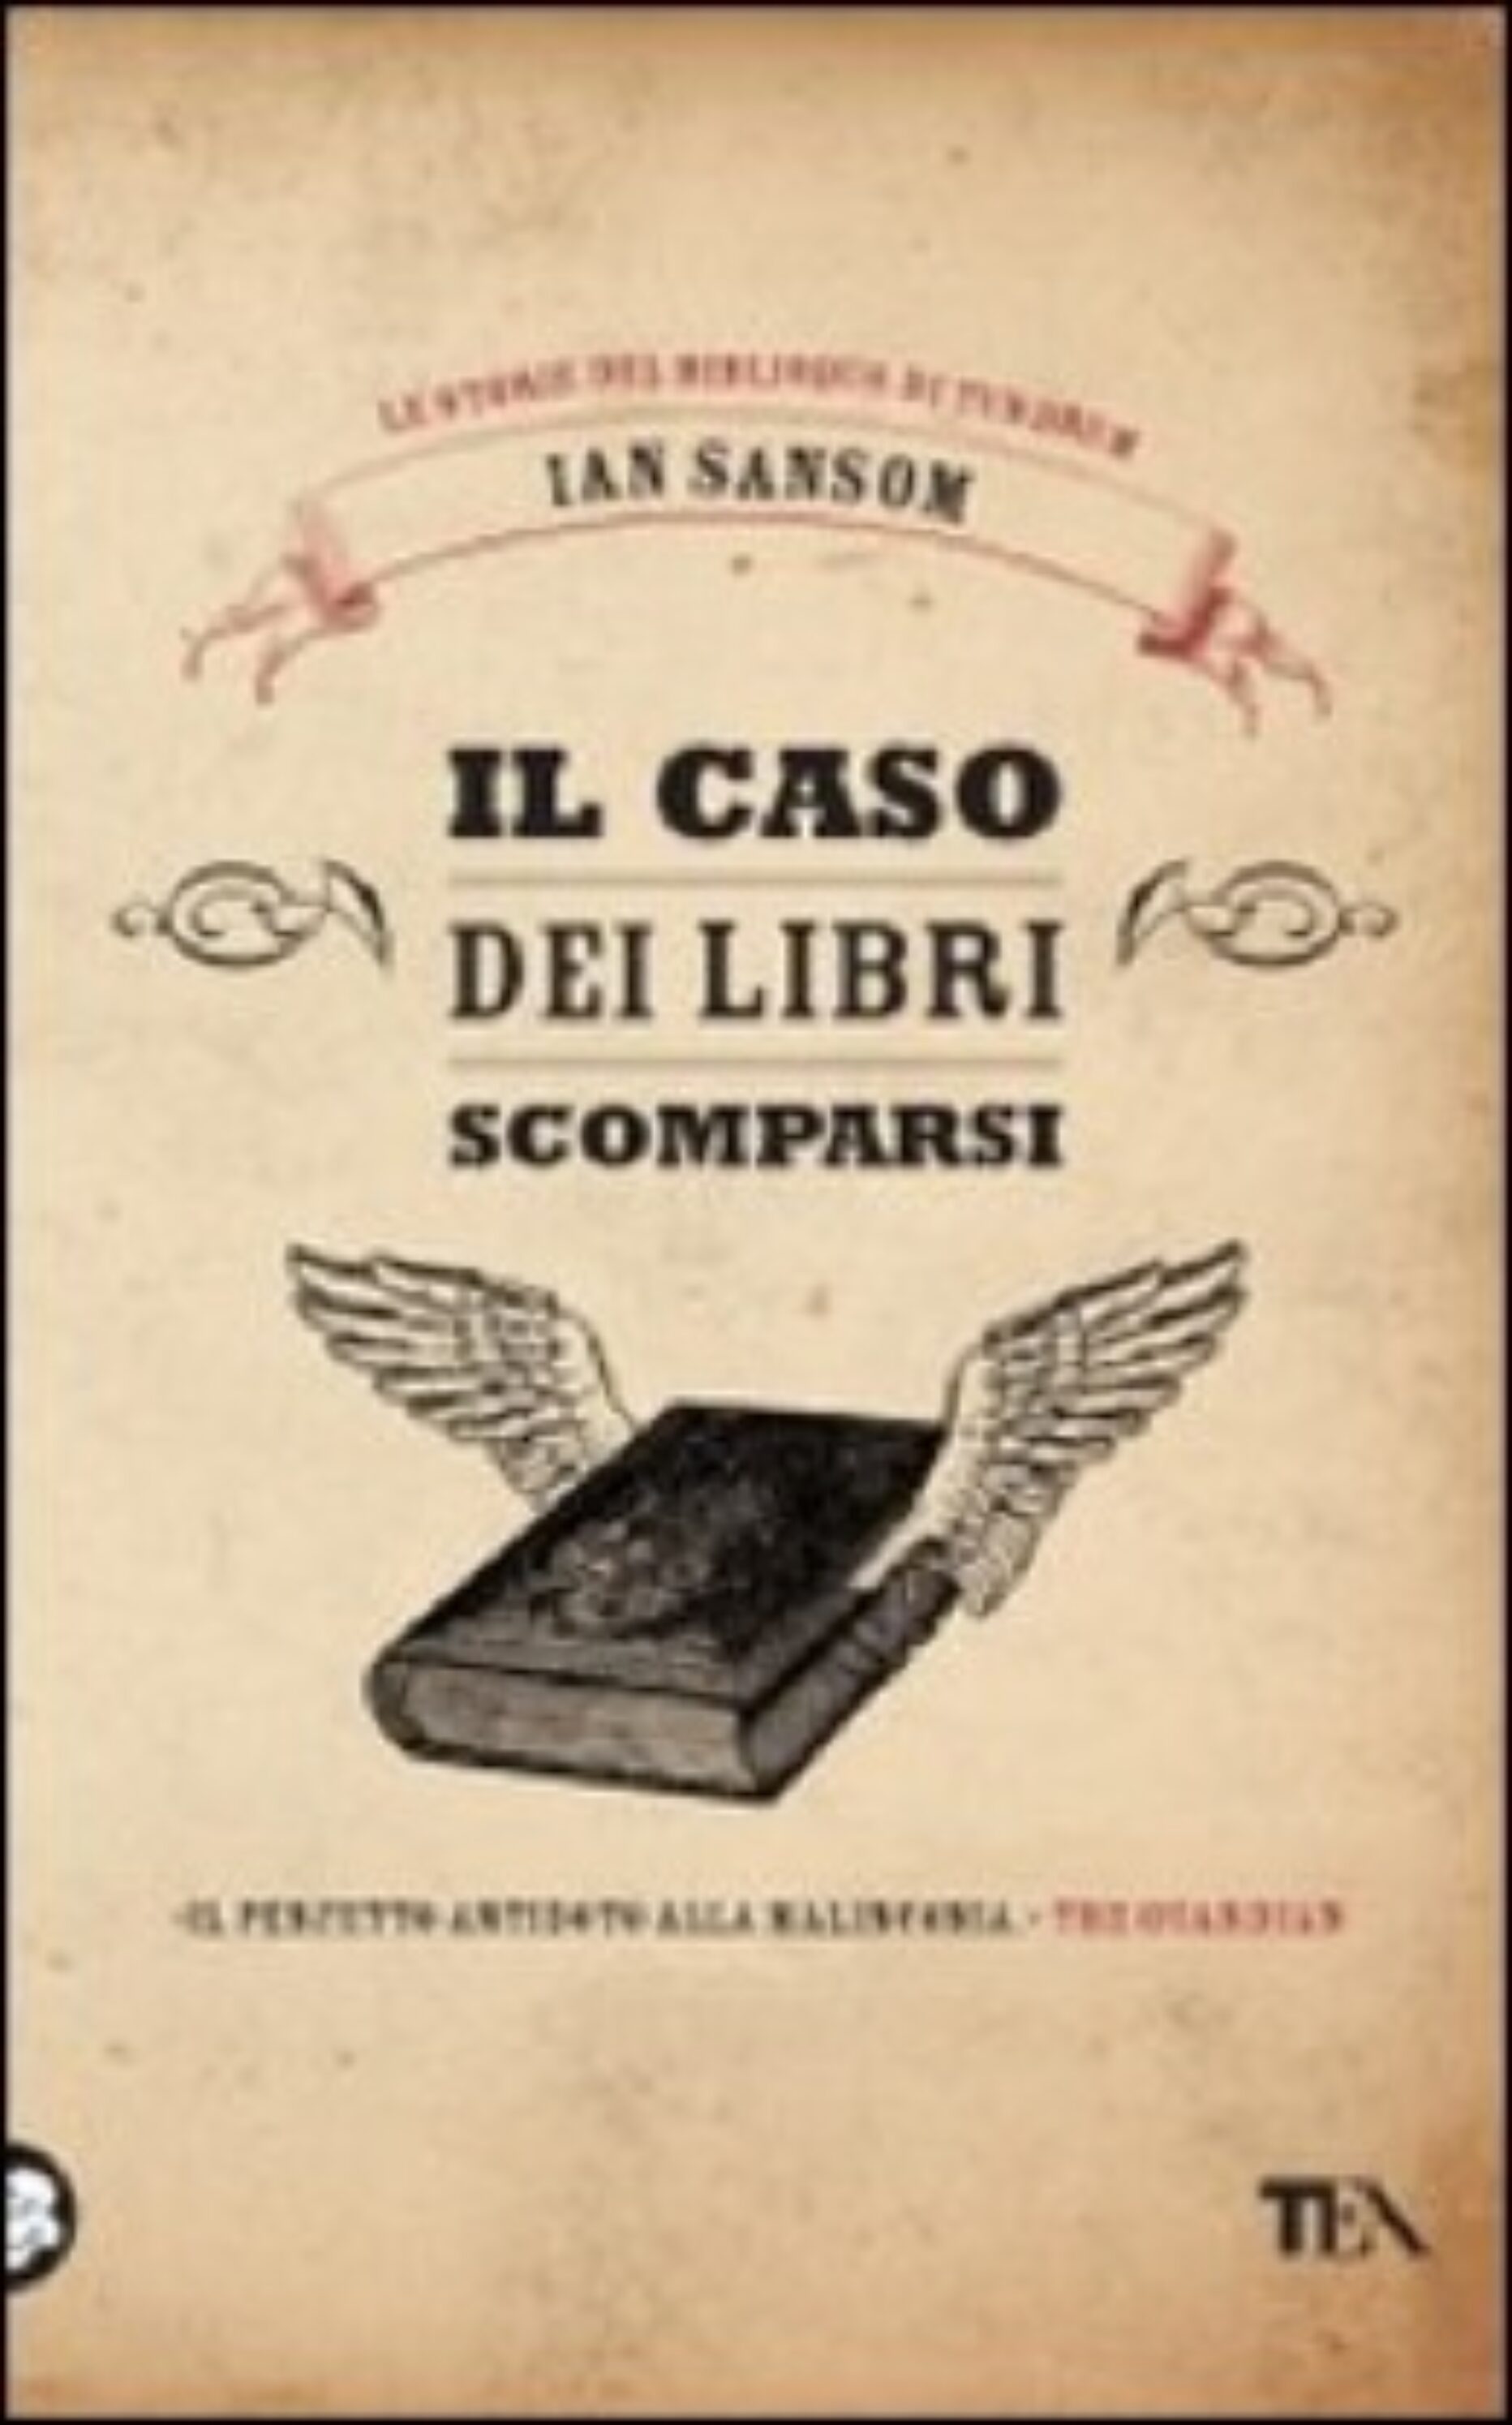 Ian Samson – Il caso dei libri scomparsi